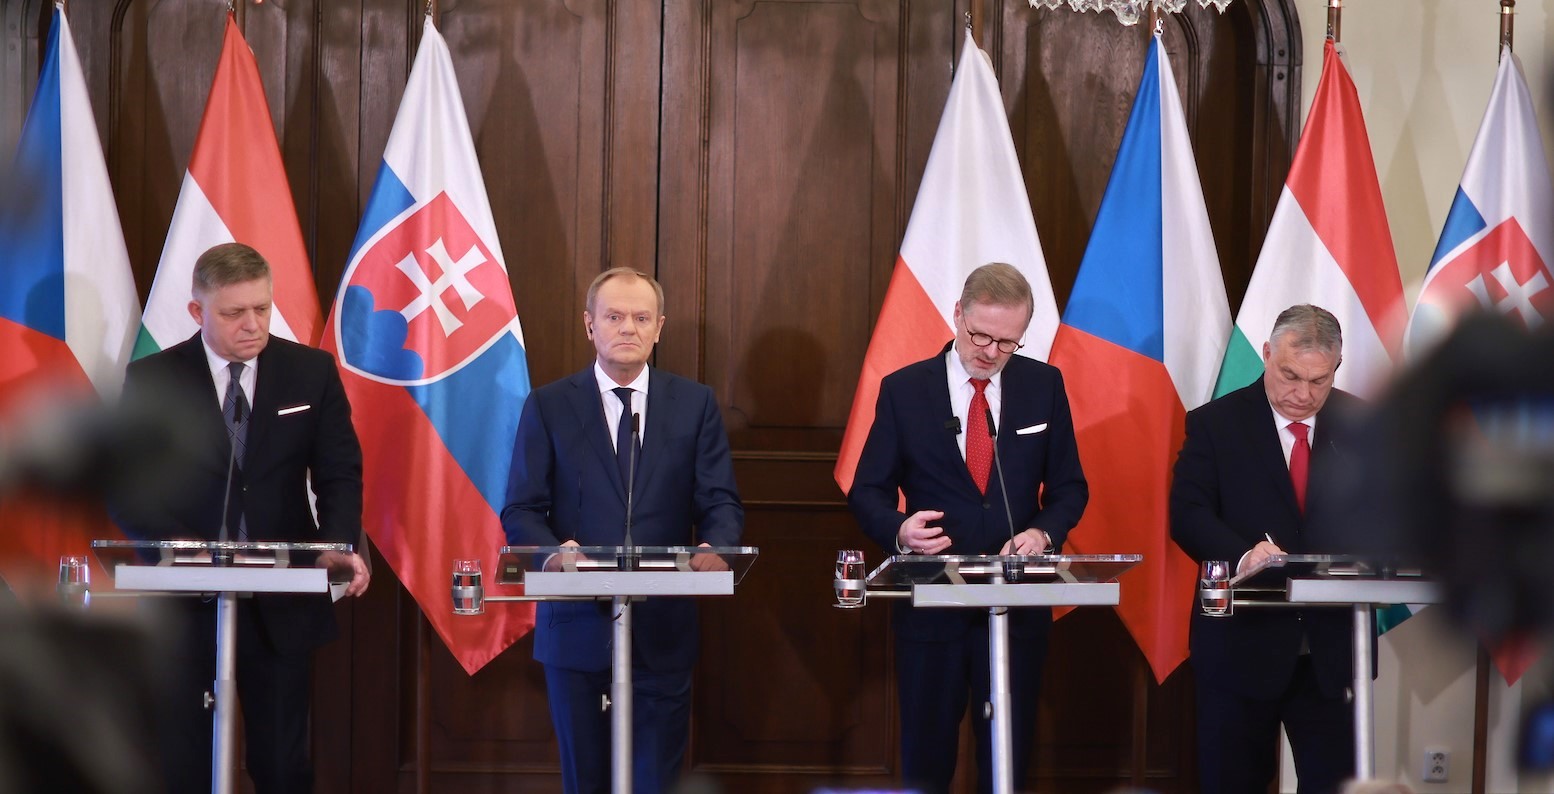 Rozdíly ohledně Ukrajiny se vyjasňují při setkání polských, maďarských, českých a slovenských premiérů